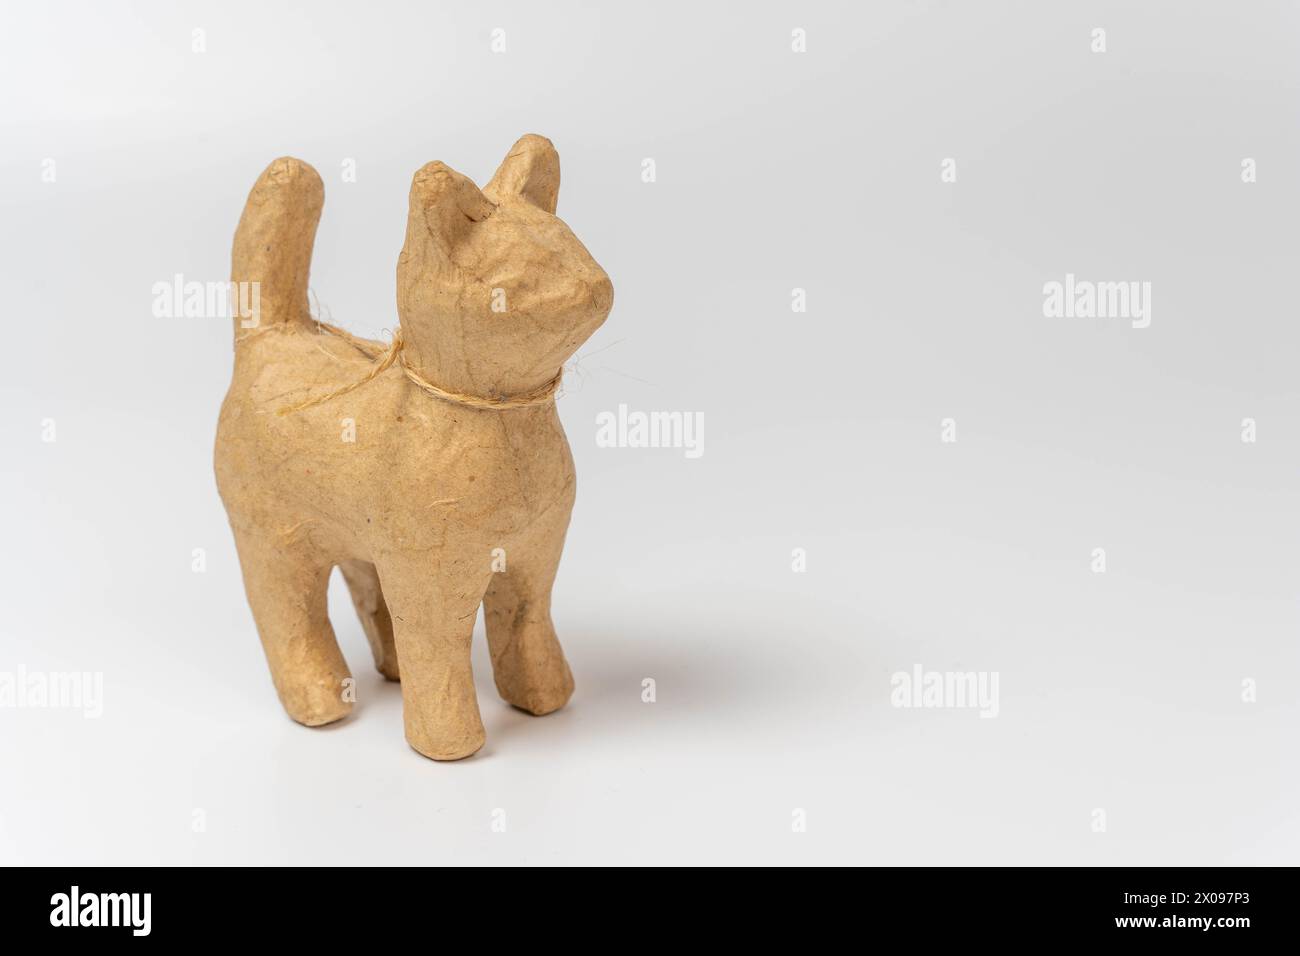 Une sculpture réaliste d'un chat en papier mâché, magnifiquement conçue avec des détails complexes. Le chat est placé sur un fond blanc propre, fournissant amplement Banque D'Images